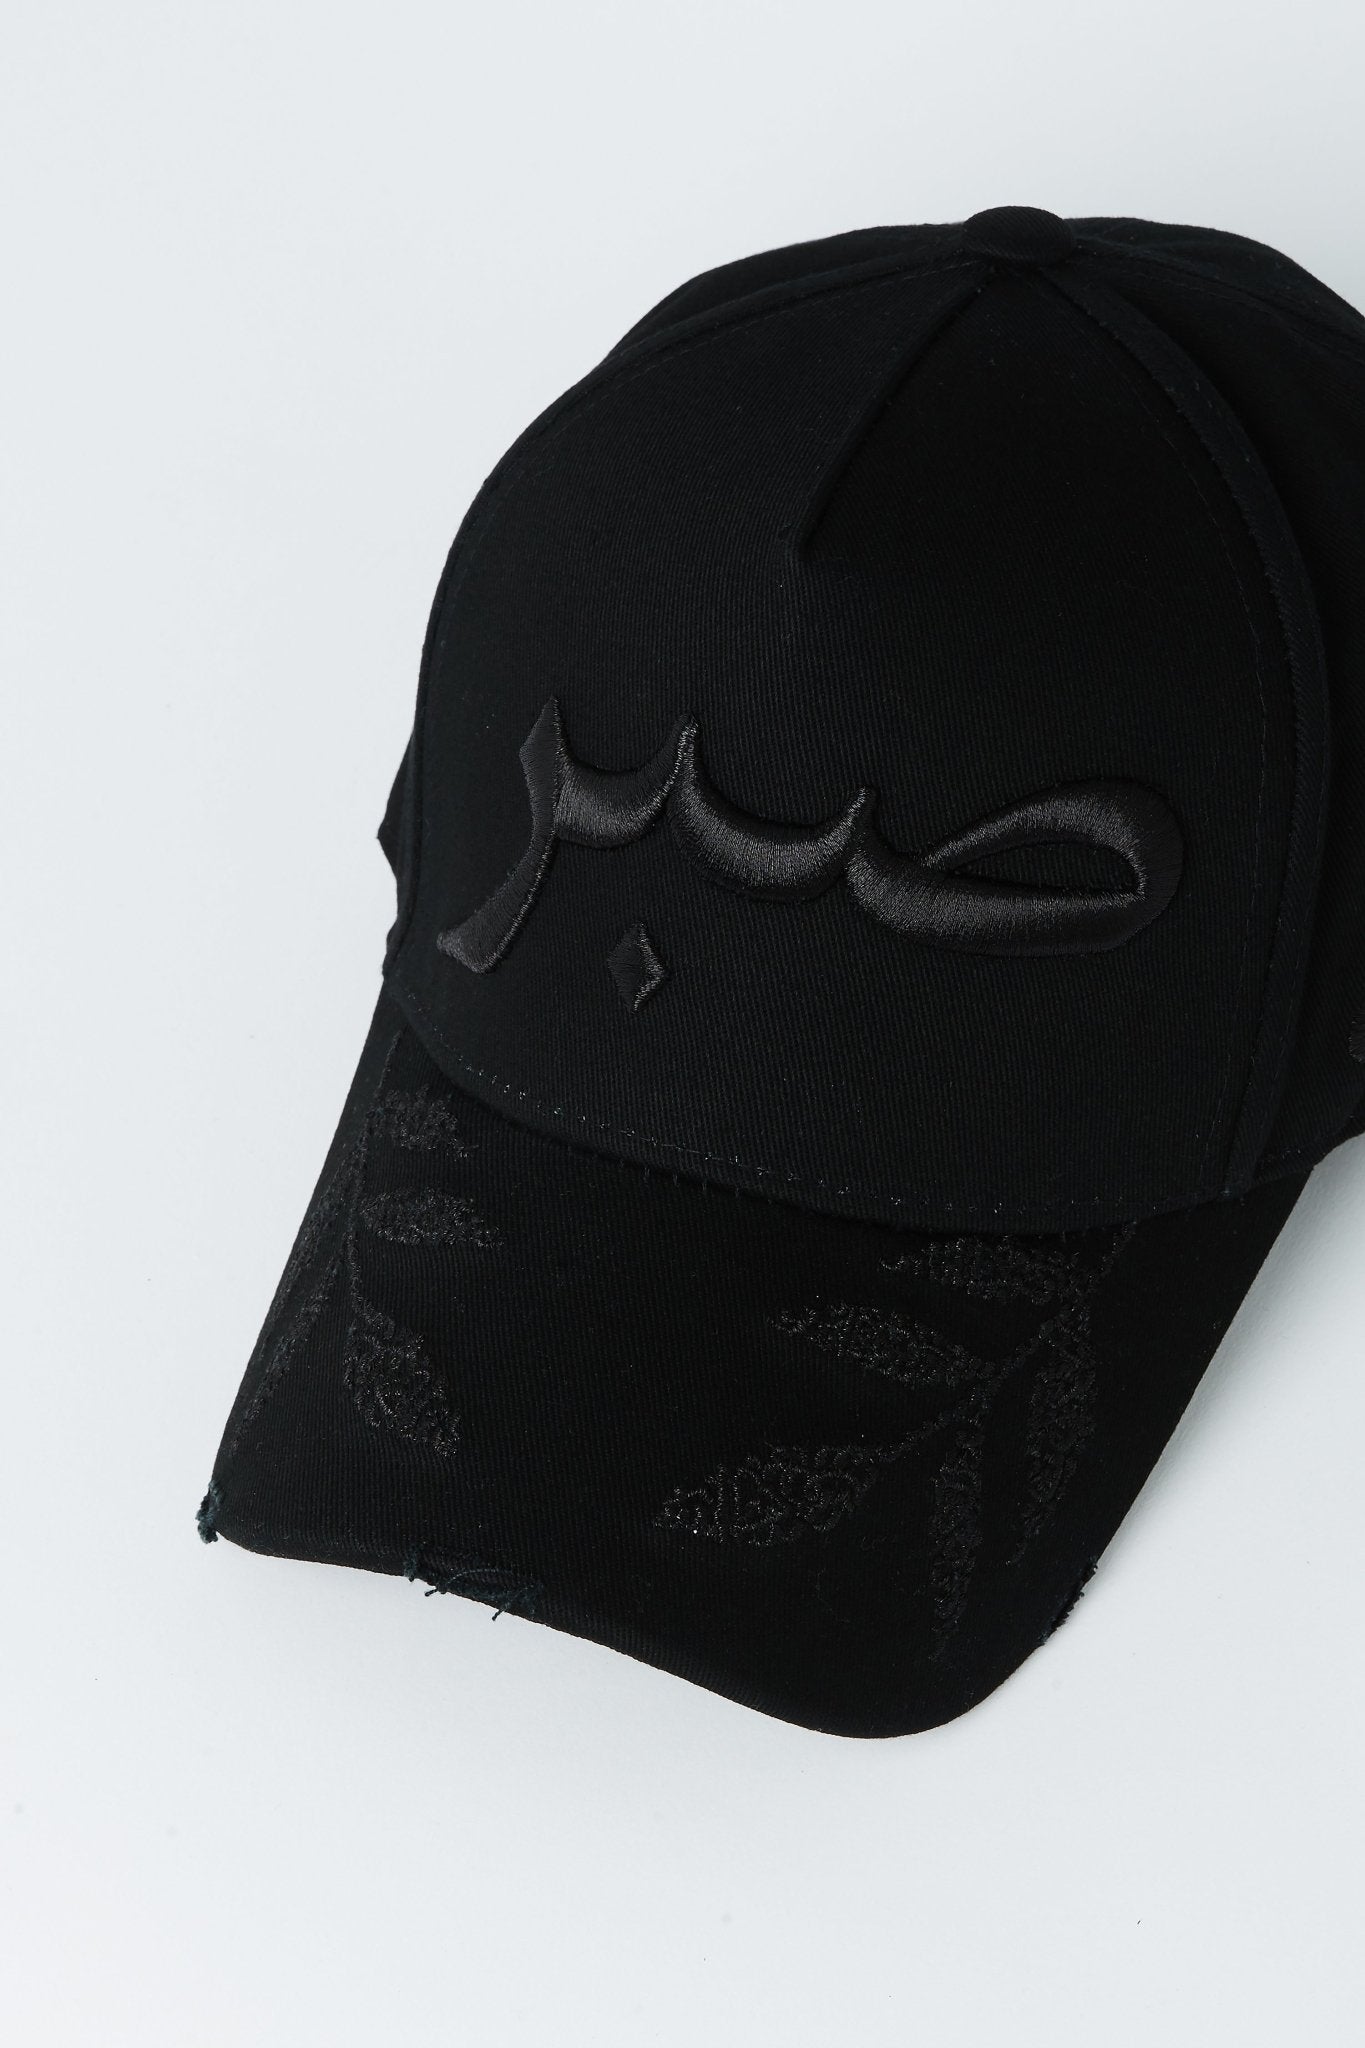 Black Leaf Patience Arabic Cap - CAVE